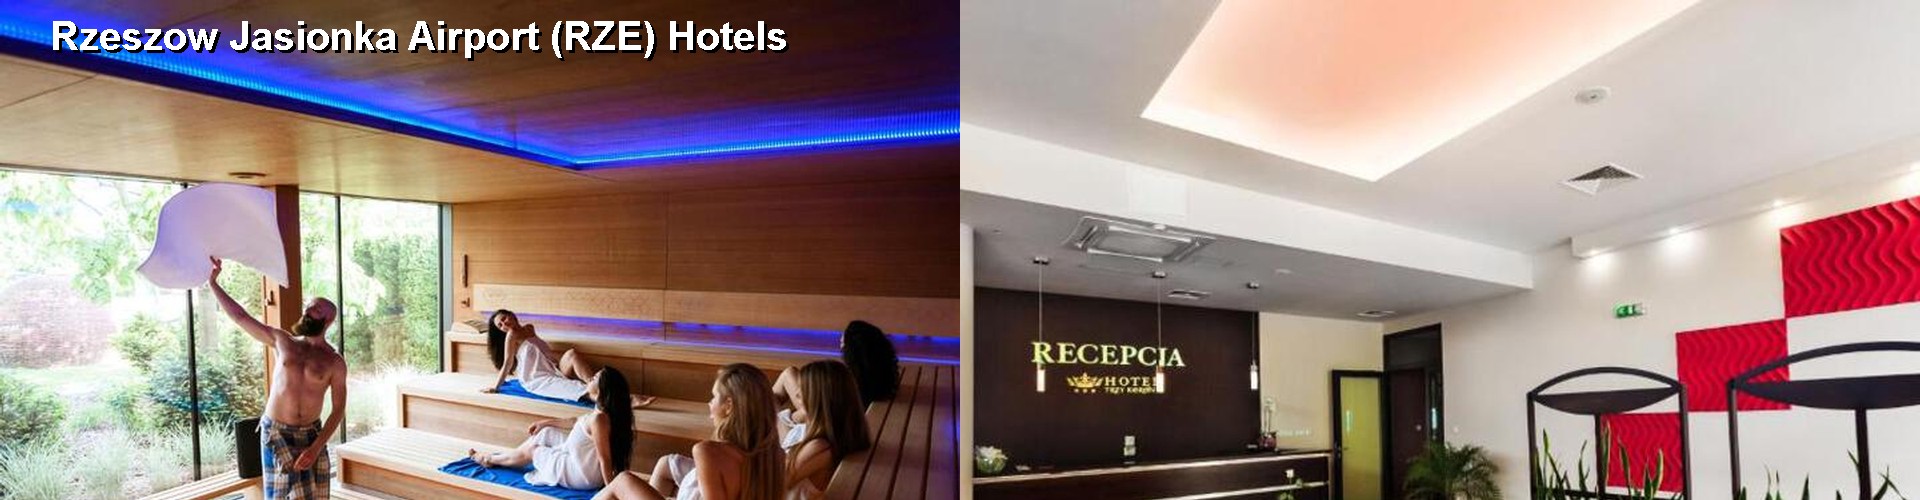 4 Best Hotels near Rzeszow Jasionka Airport (RZE)